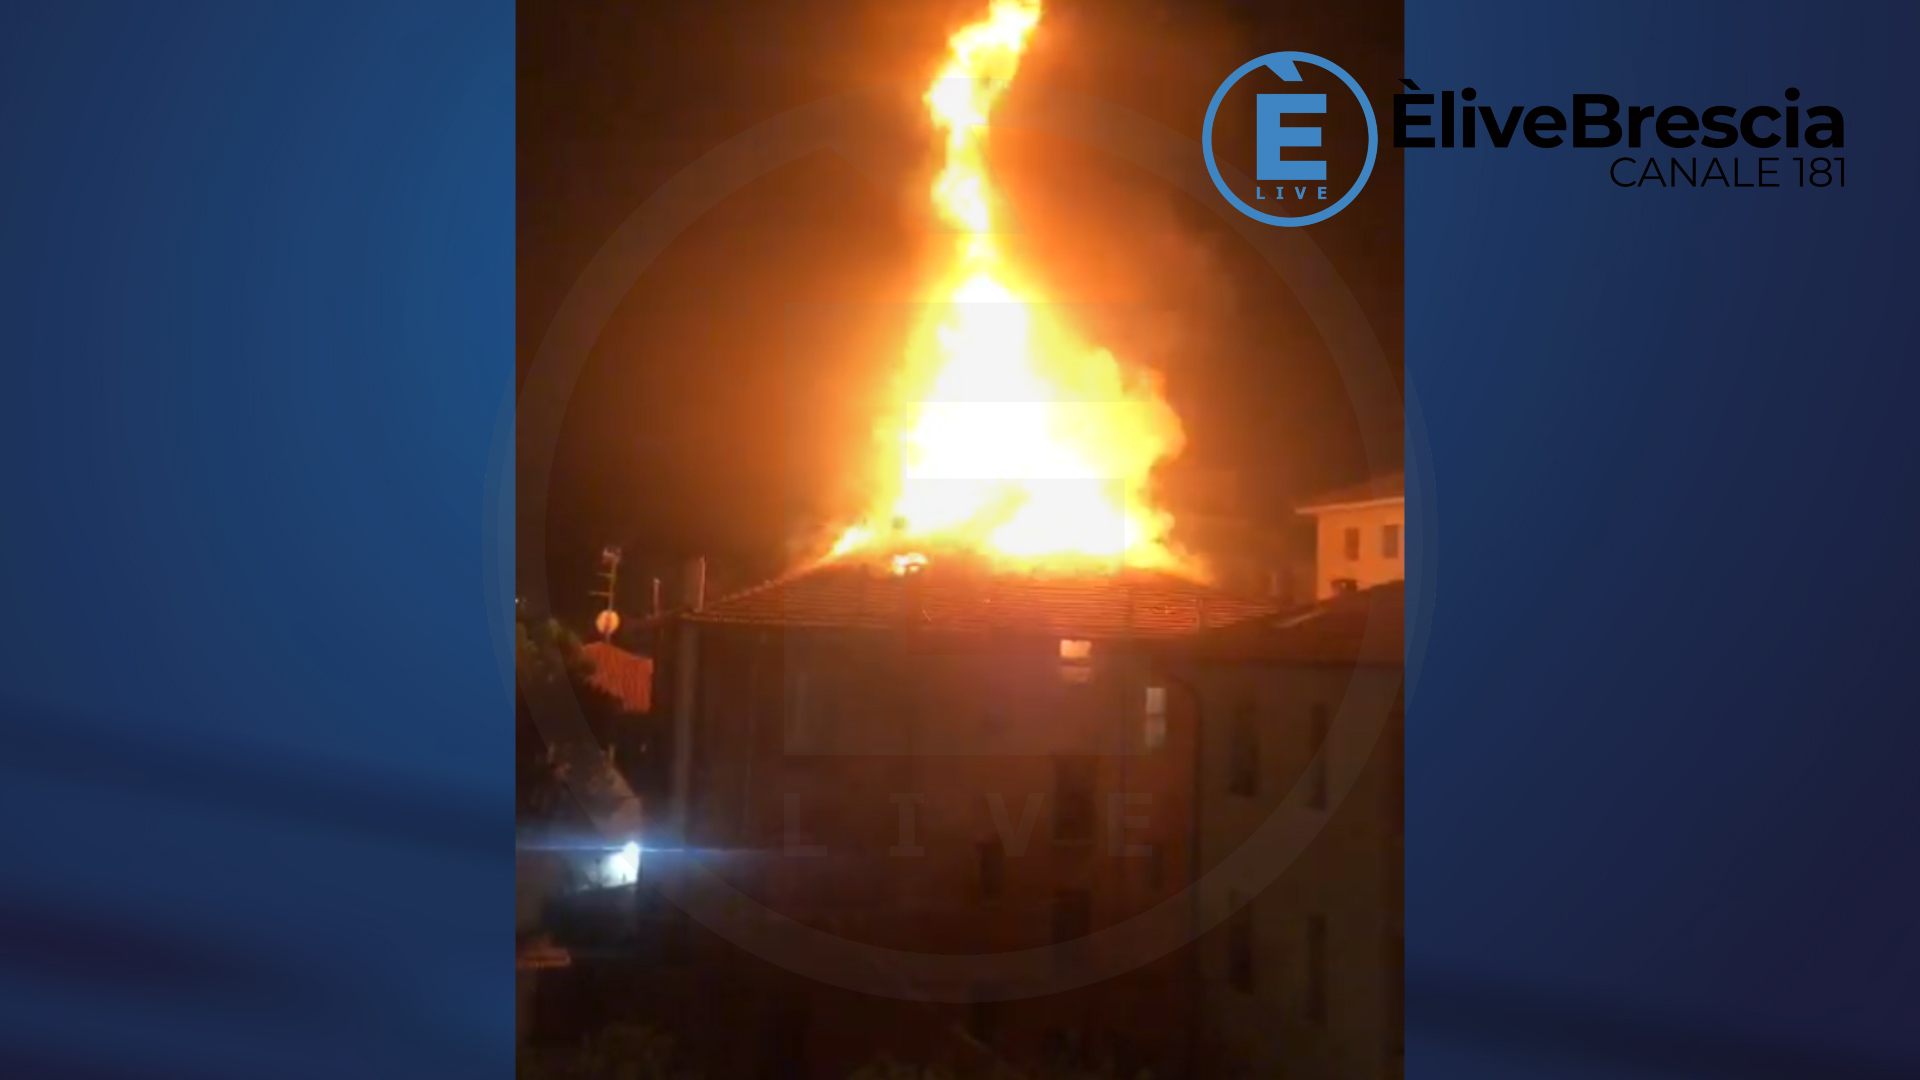 Paura in via Cremona: a fuoco il tetto di un condominio. Famiglie sfollate